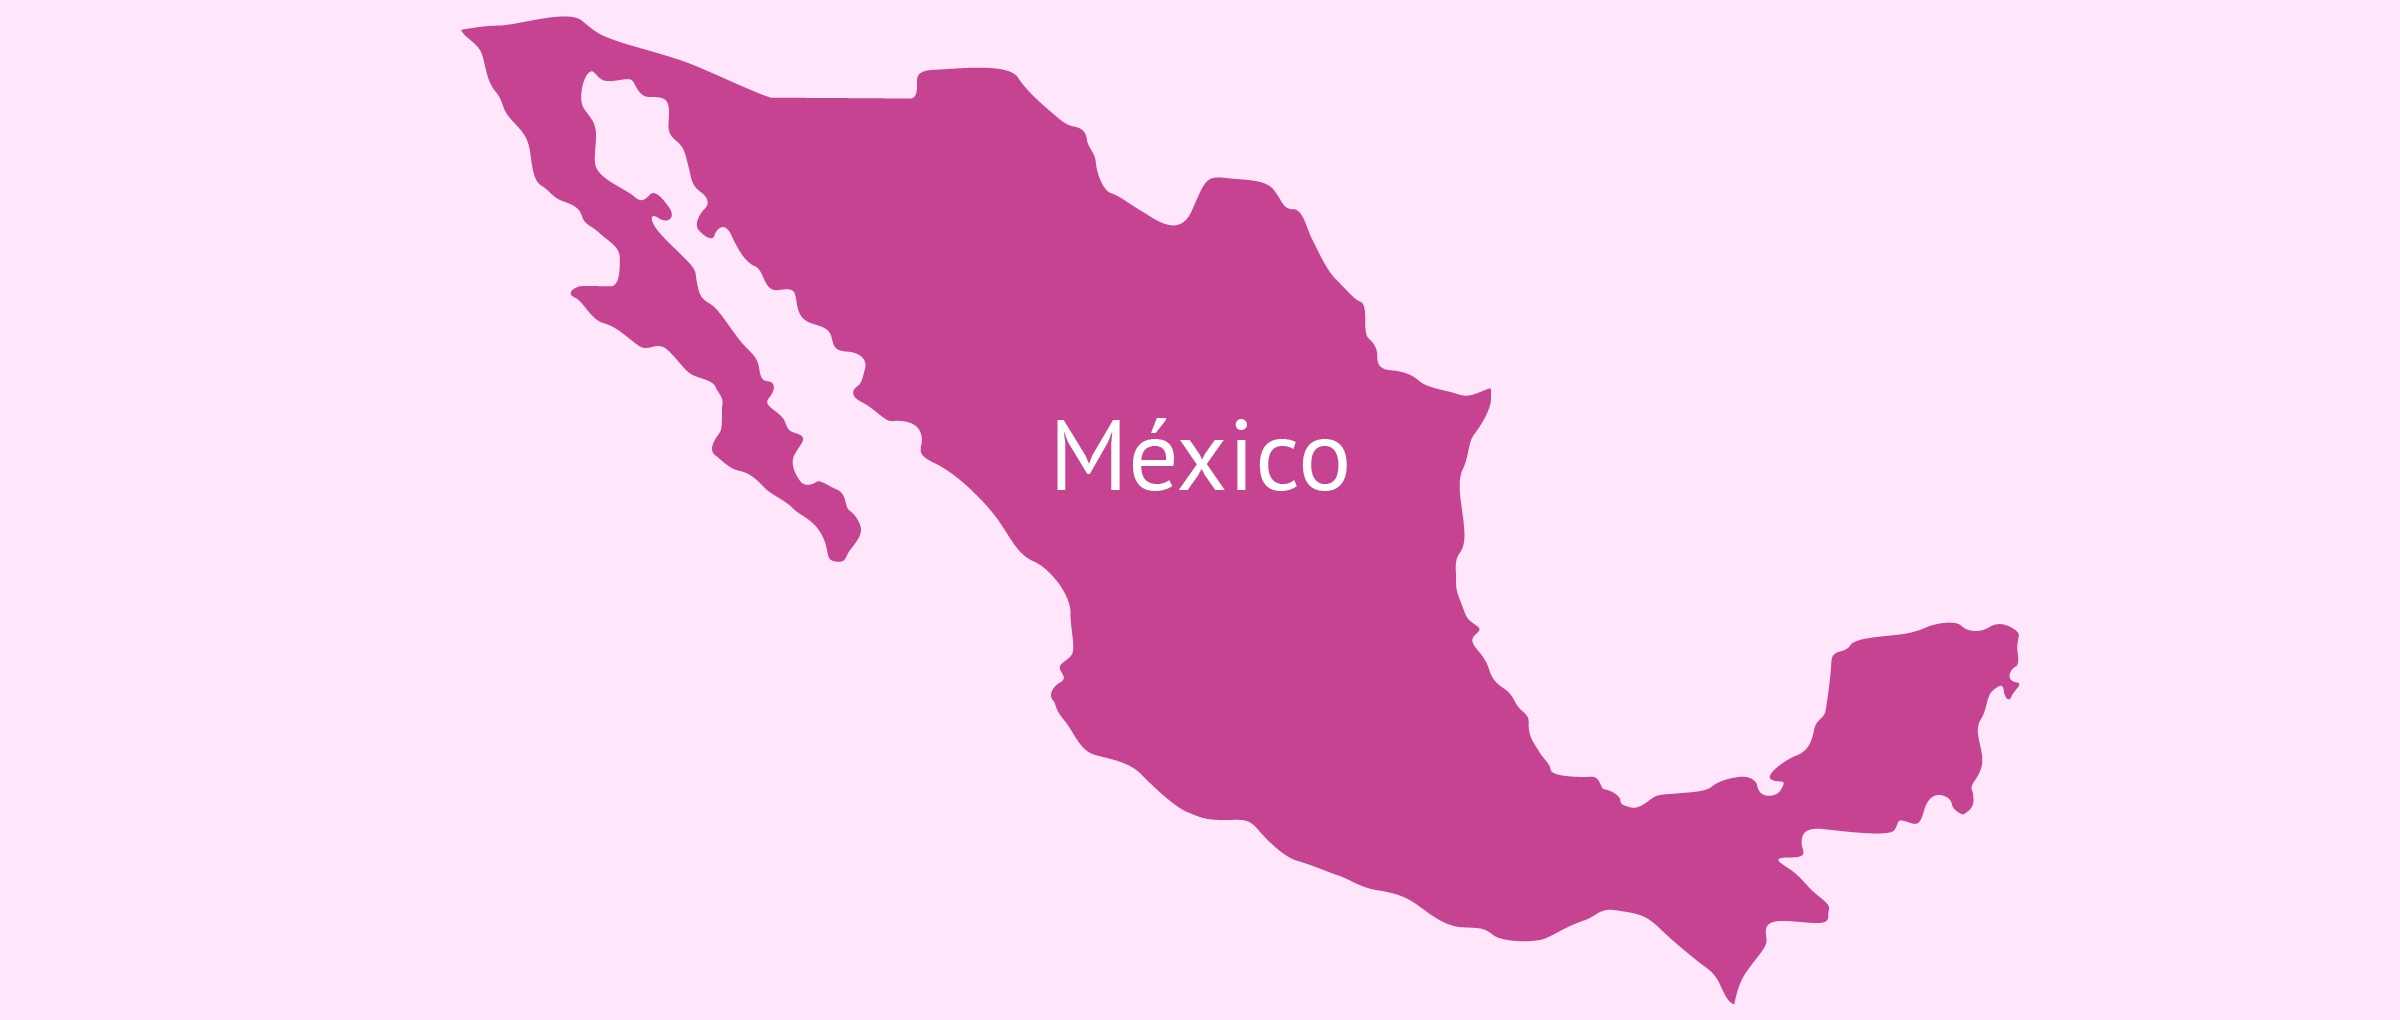 Gestación subrogada en México